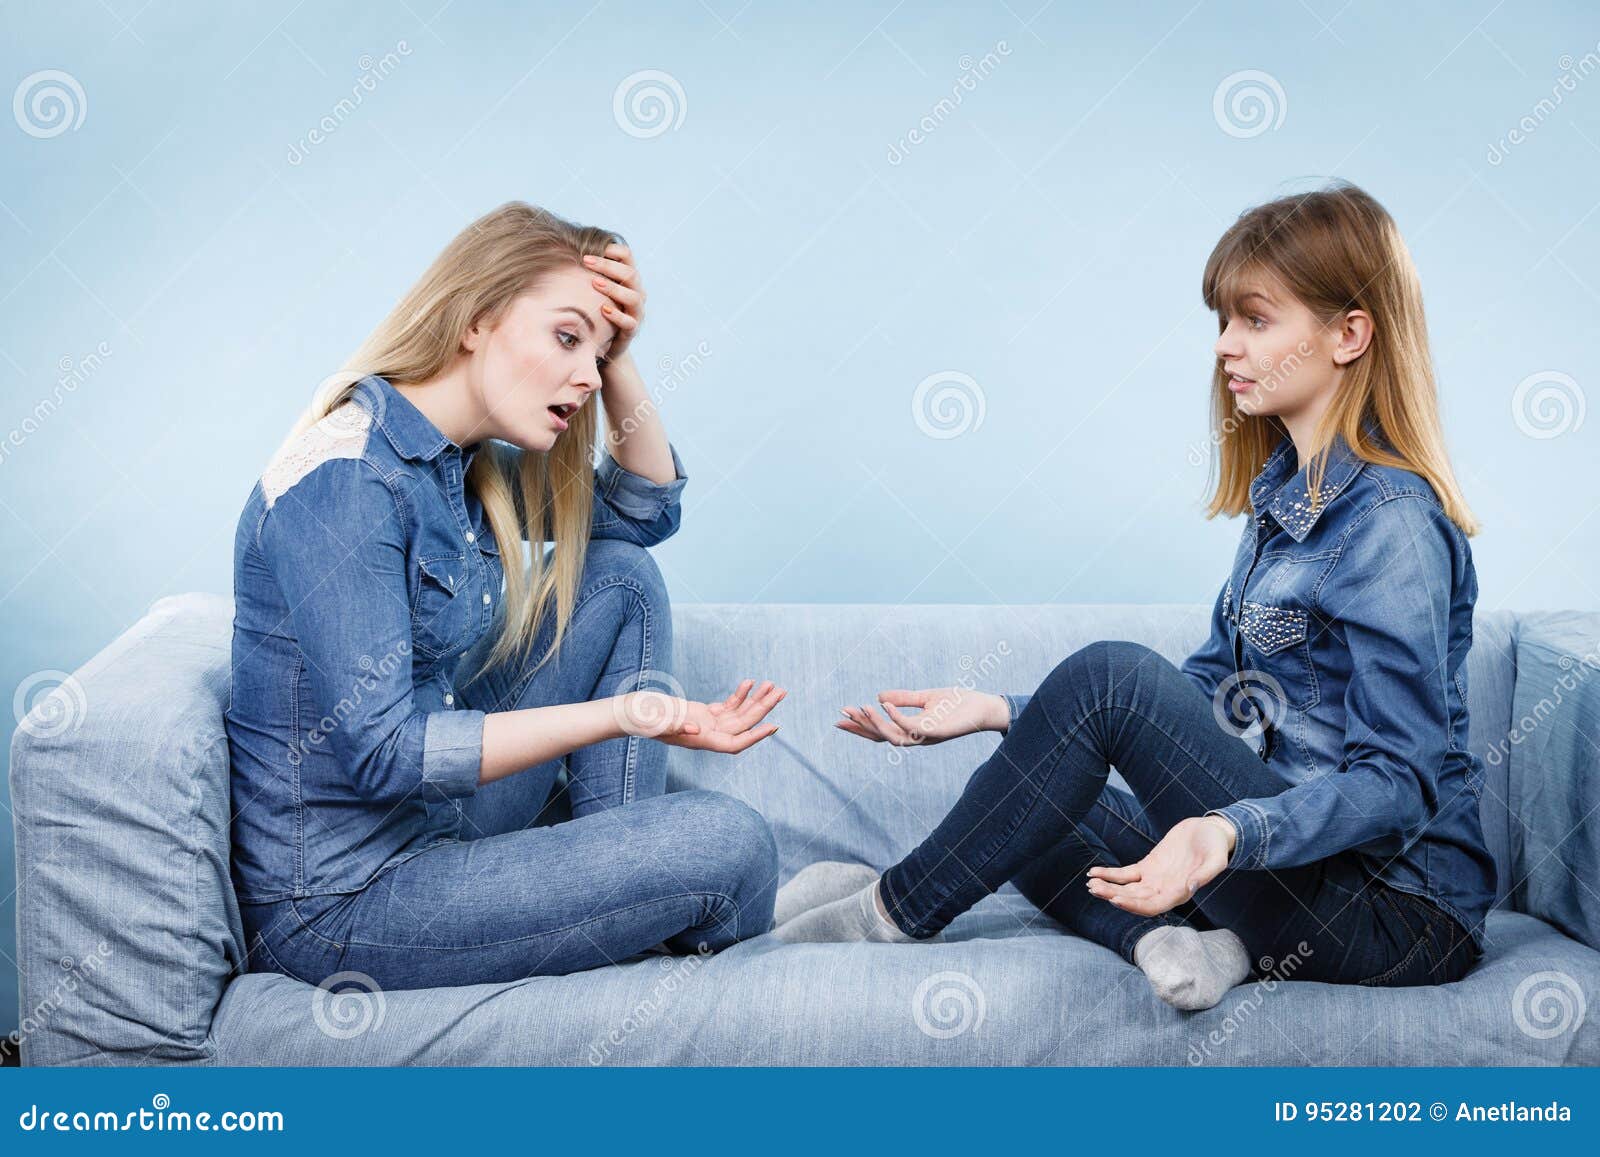 Сестра хочу разговором. Разговор с сестрой. Две женщины серьезно беседуют. Разговор двух женщин. Две женщины серьезно разговаривают.